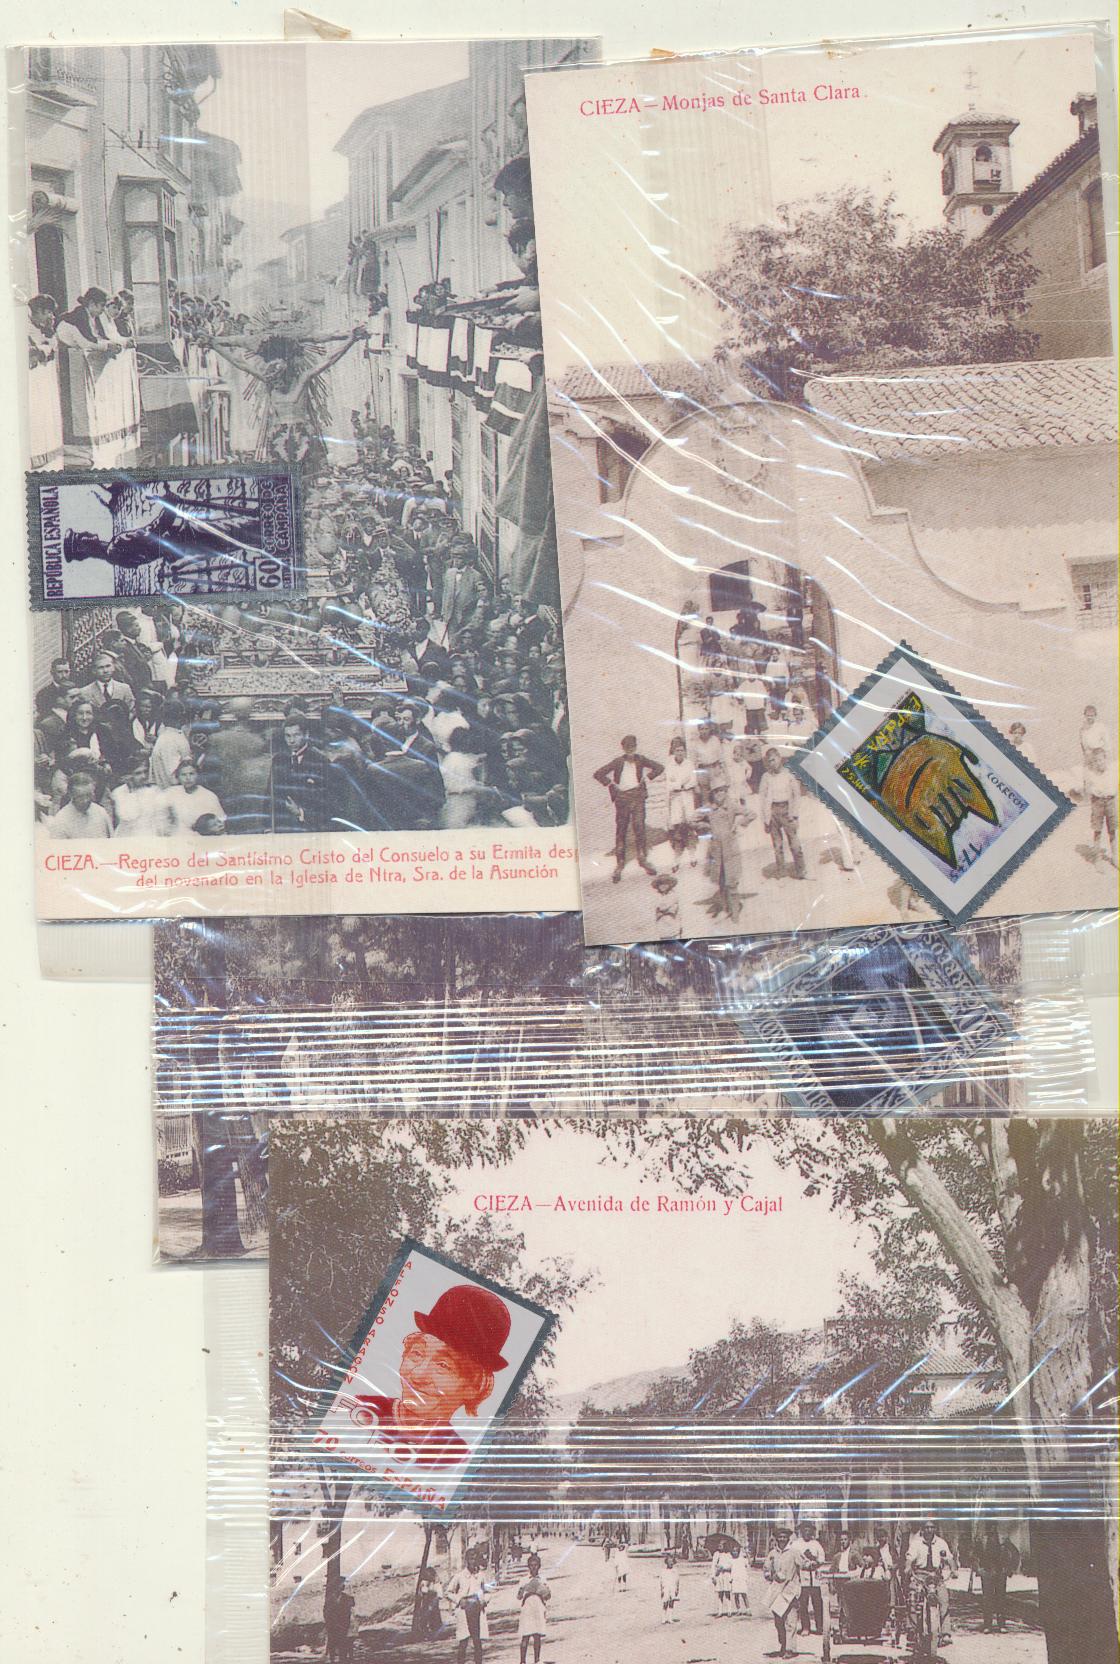 Cieza. Lote de 4 postales con el sello metálico, en su envoltura original. Edición de La Opinión, año 2000